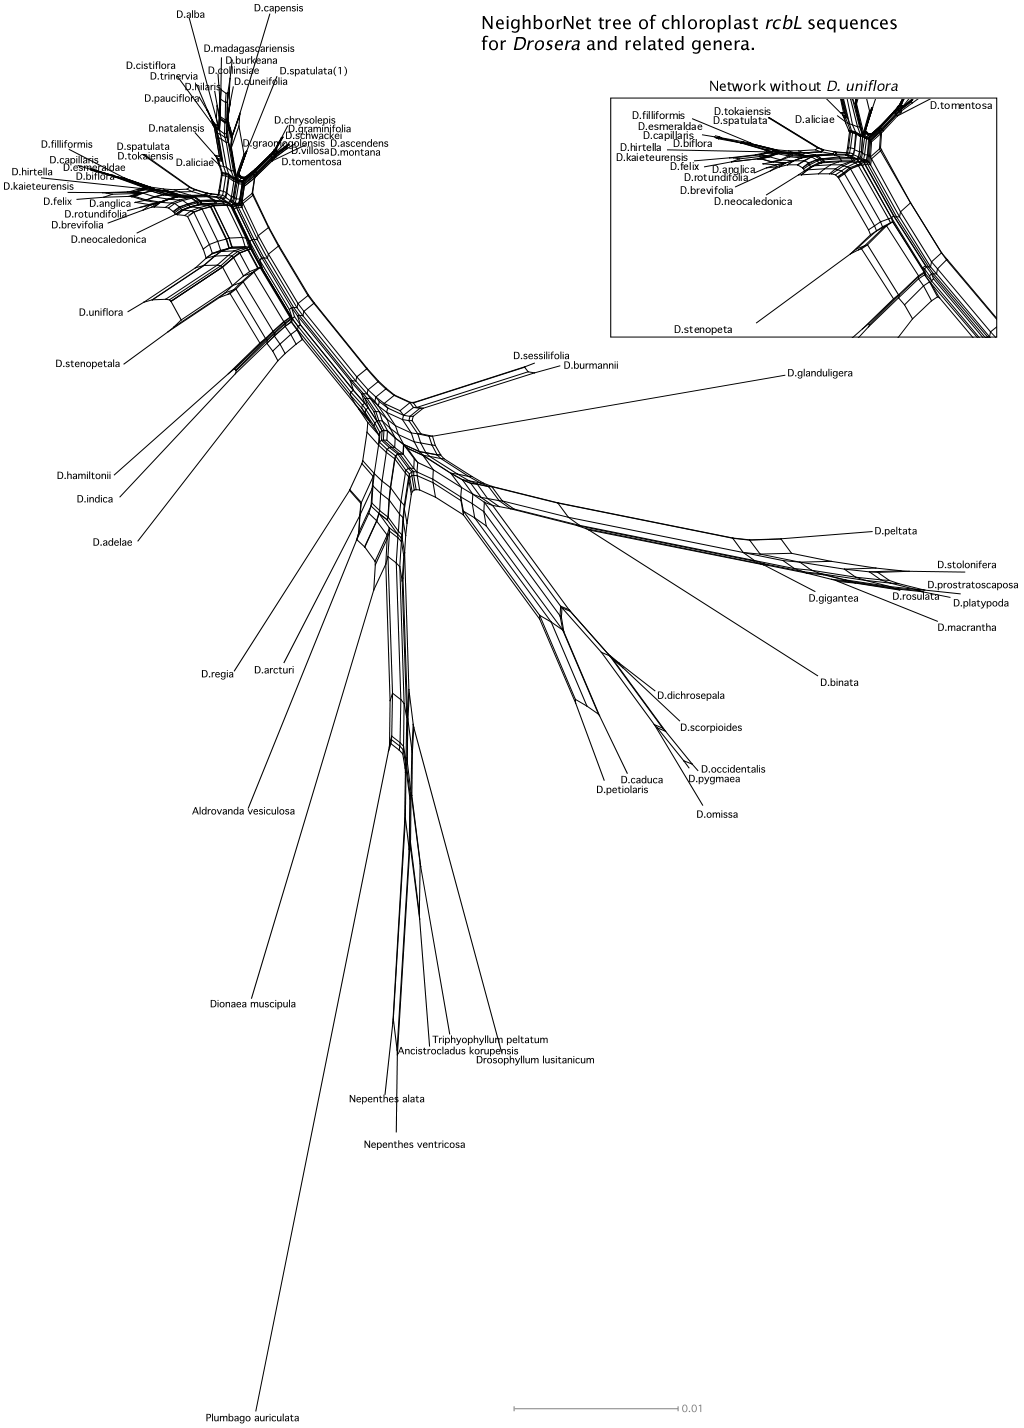 Drosera NeighborNet Phylogeny